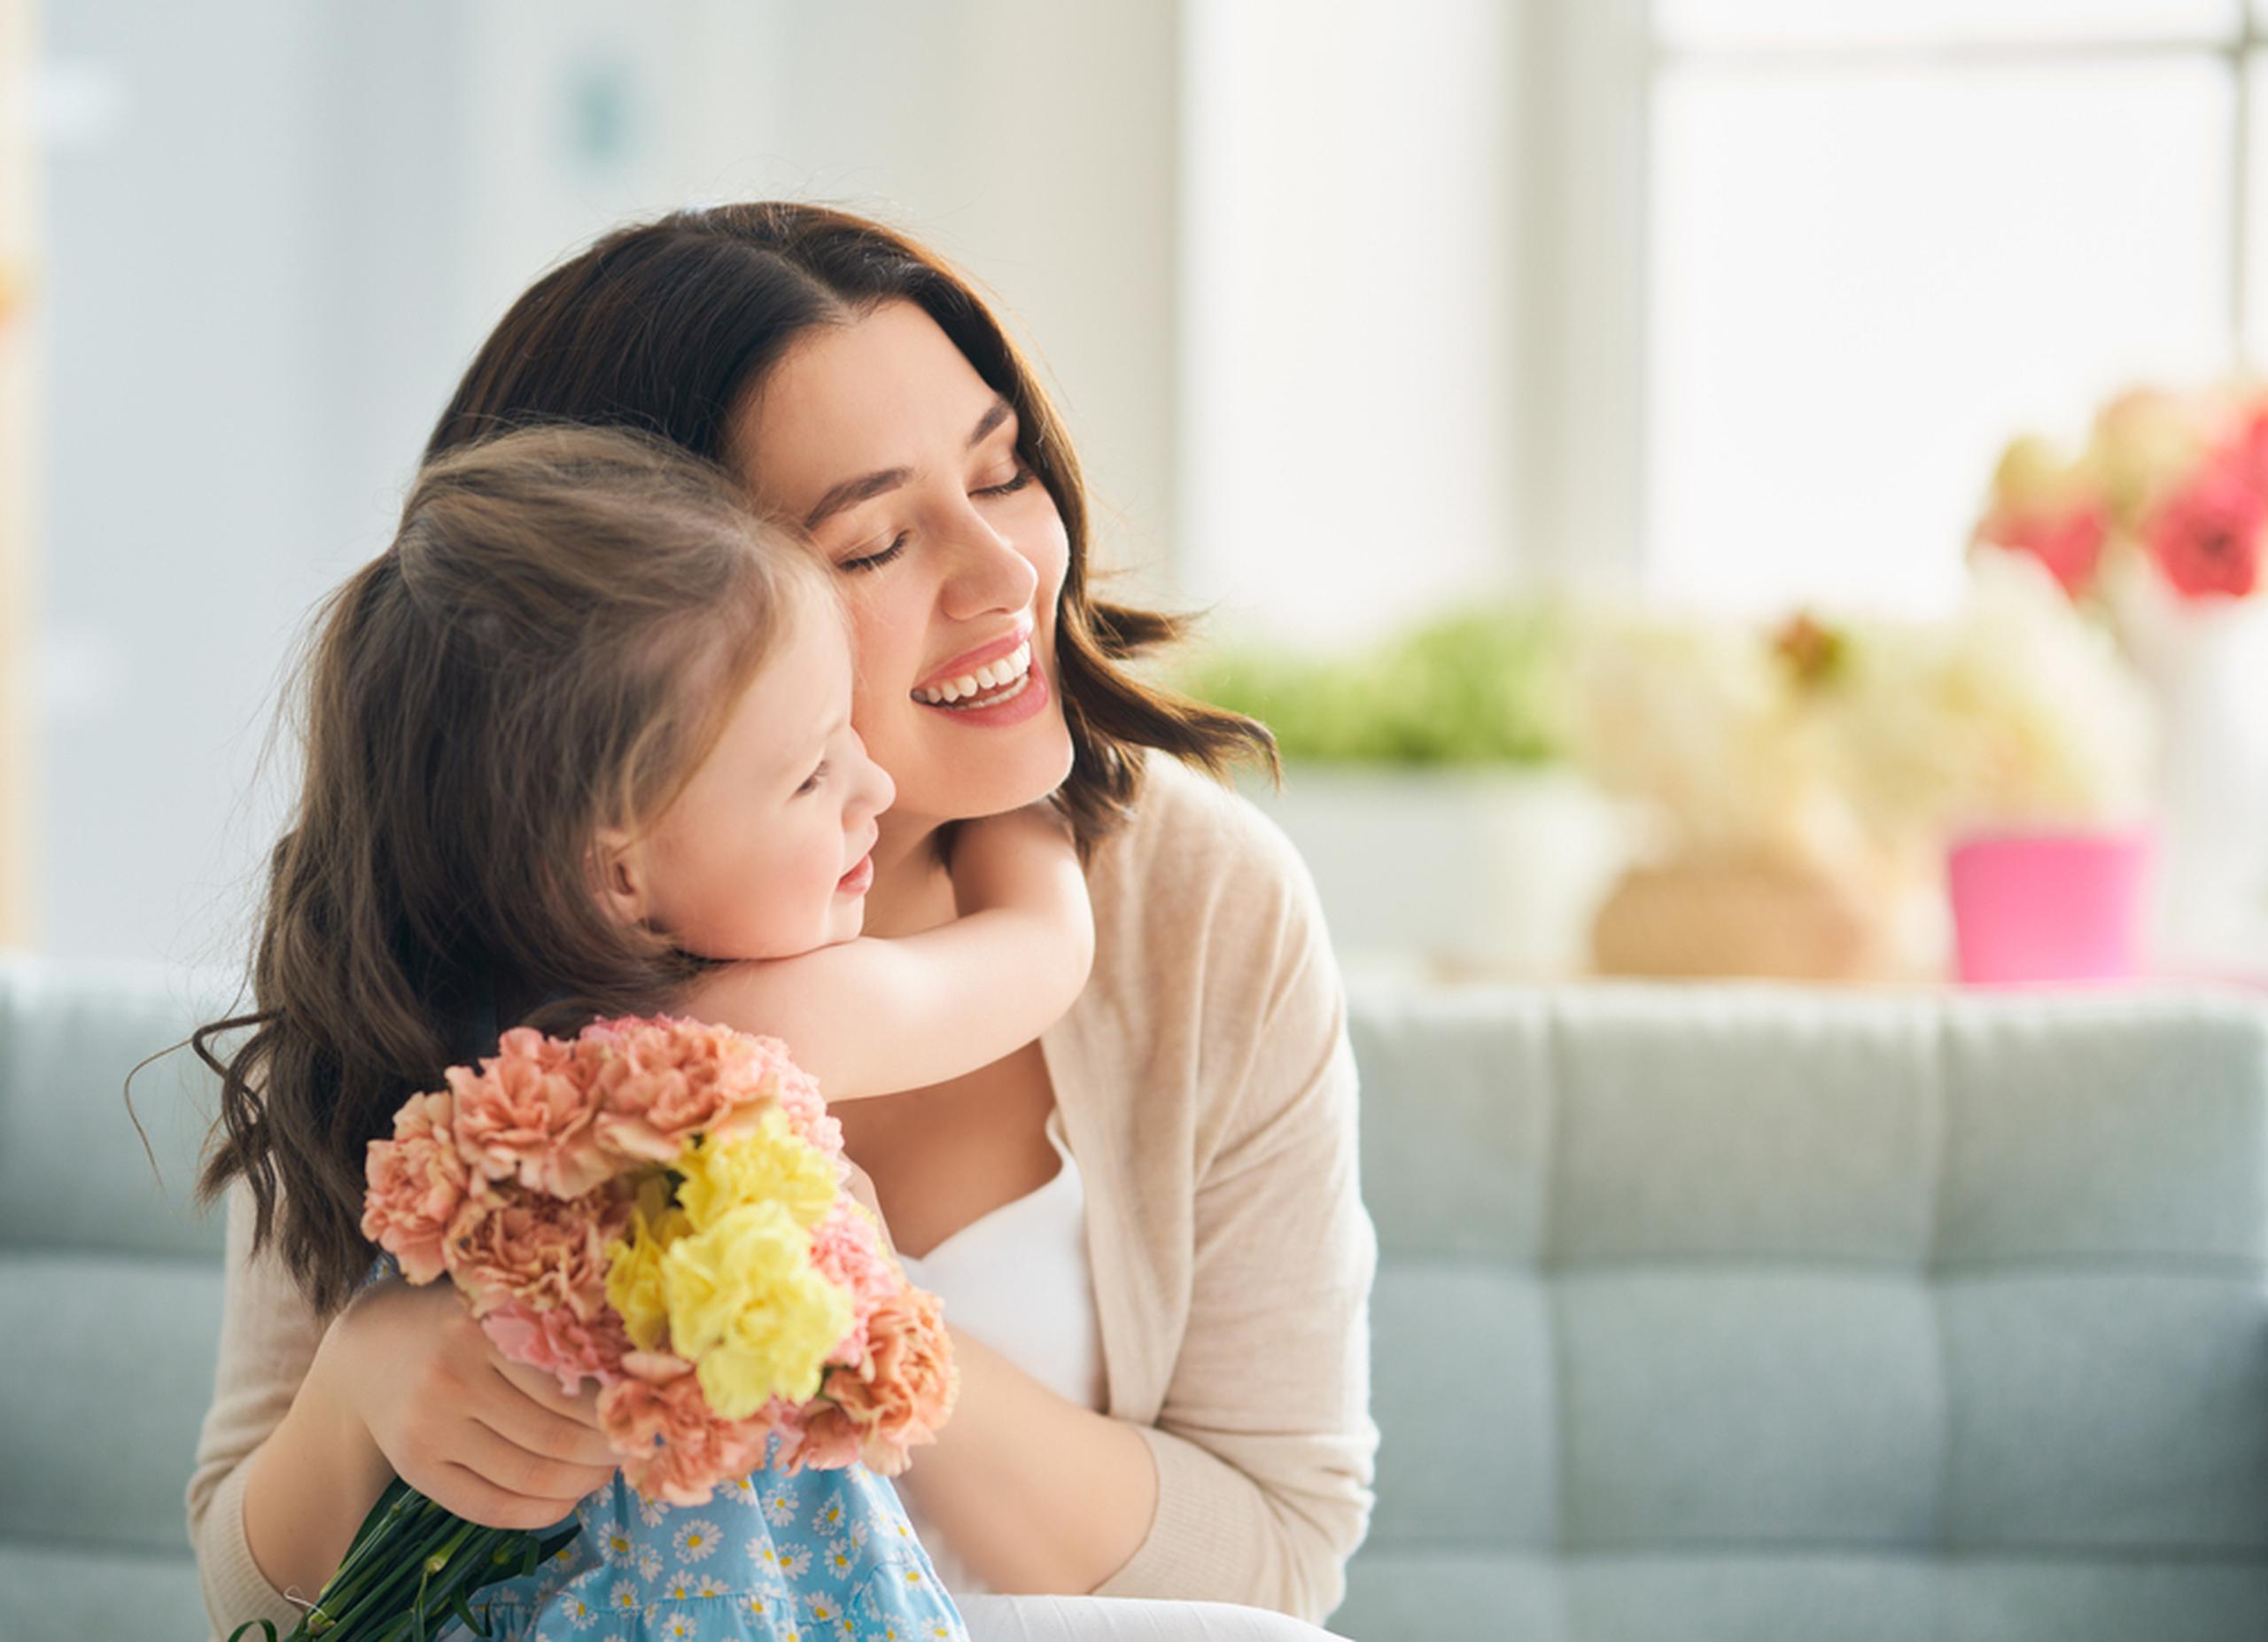 Día de la Madre: 5 experiencias memorables para regalar a mamá